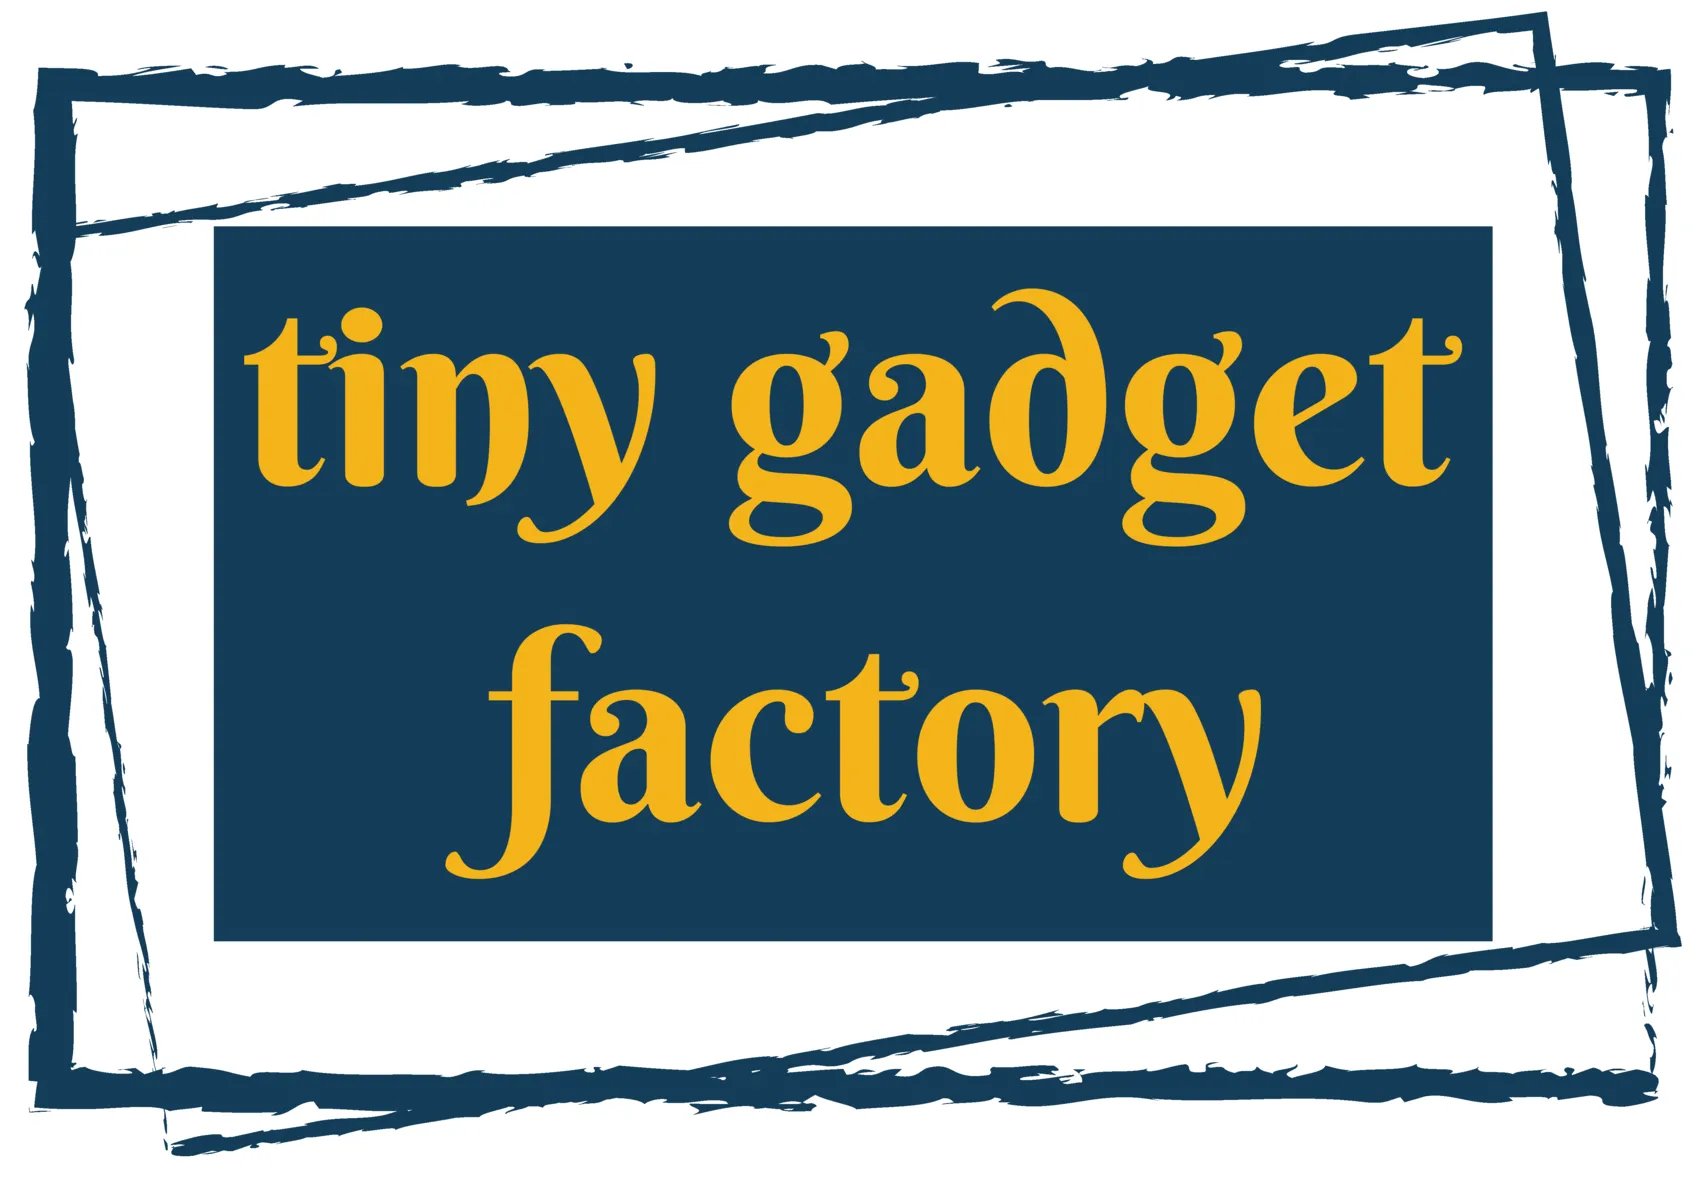 Tiny Gadget Factory